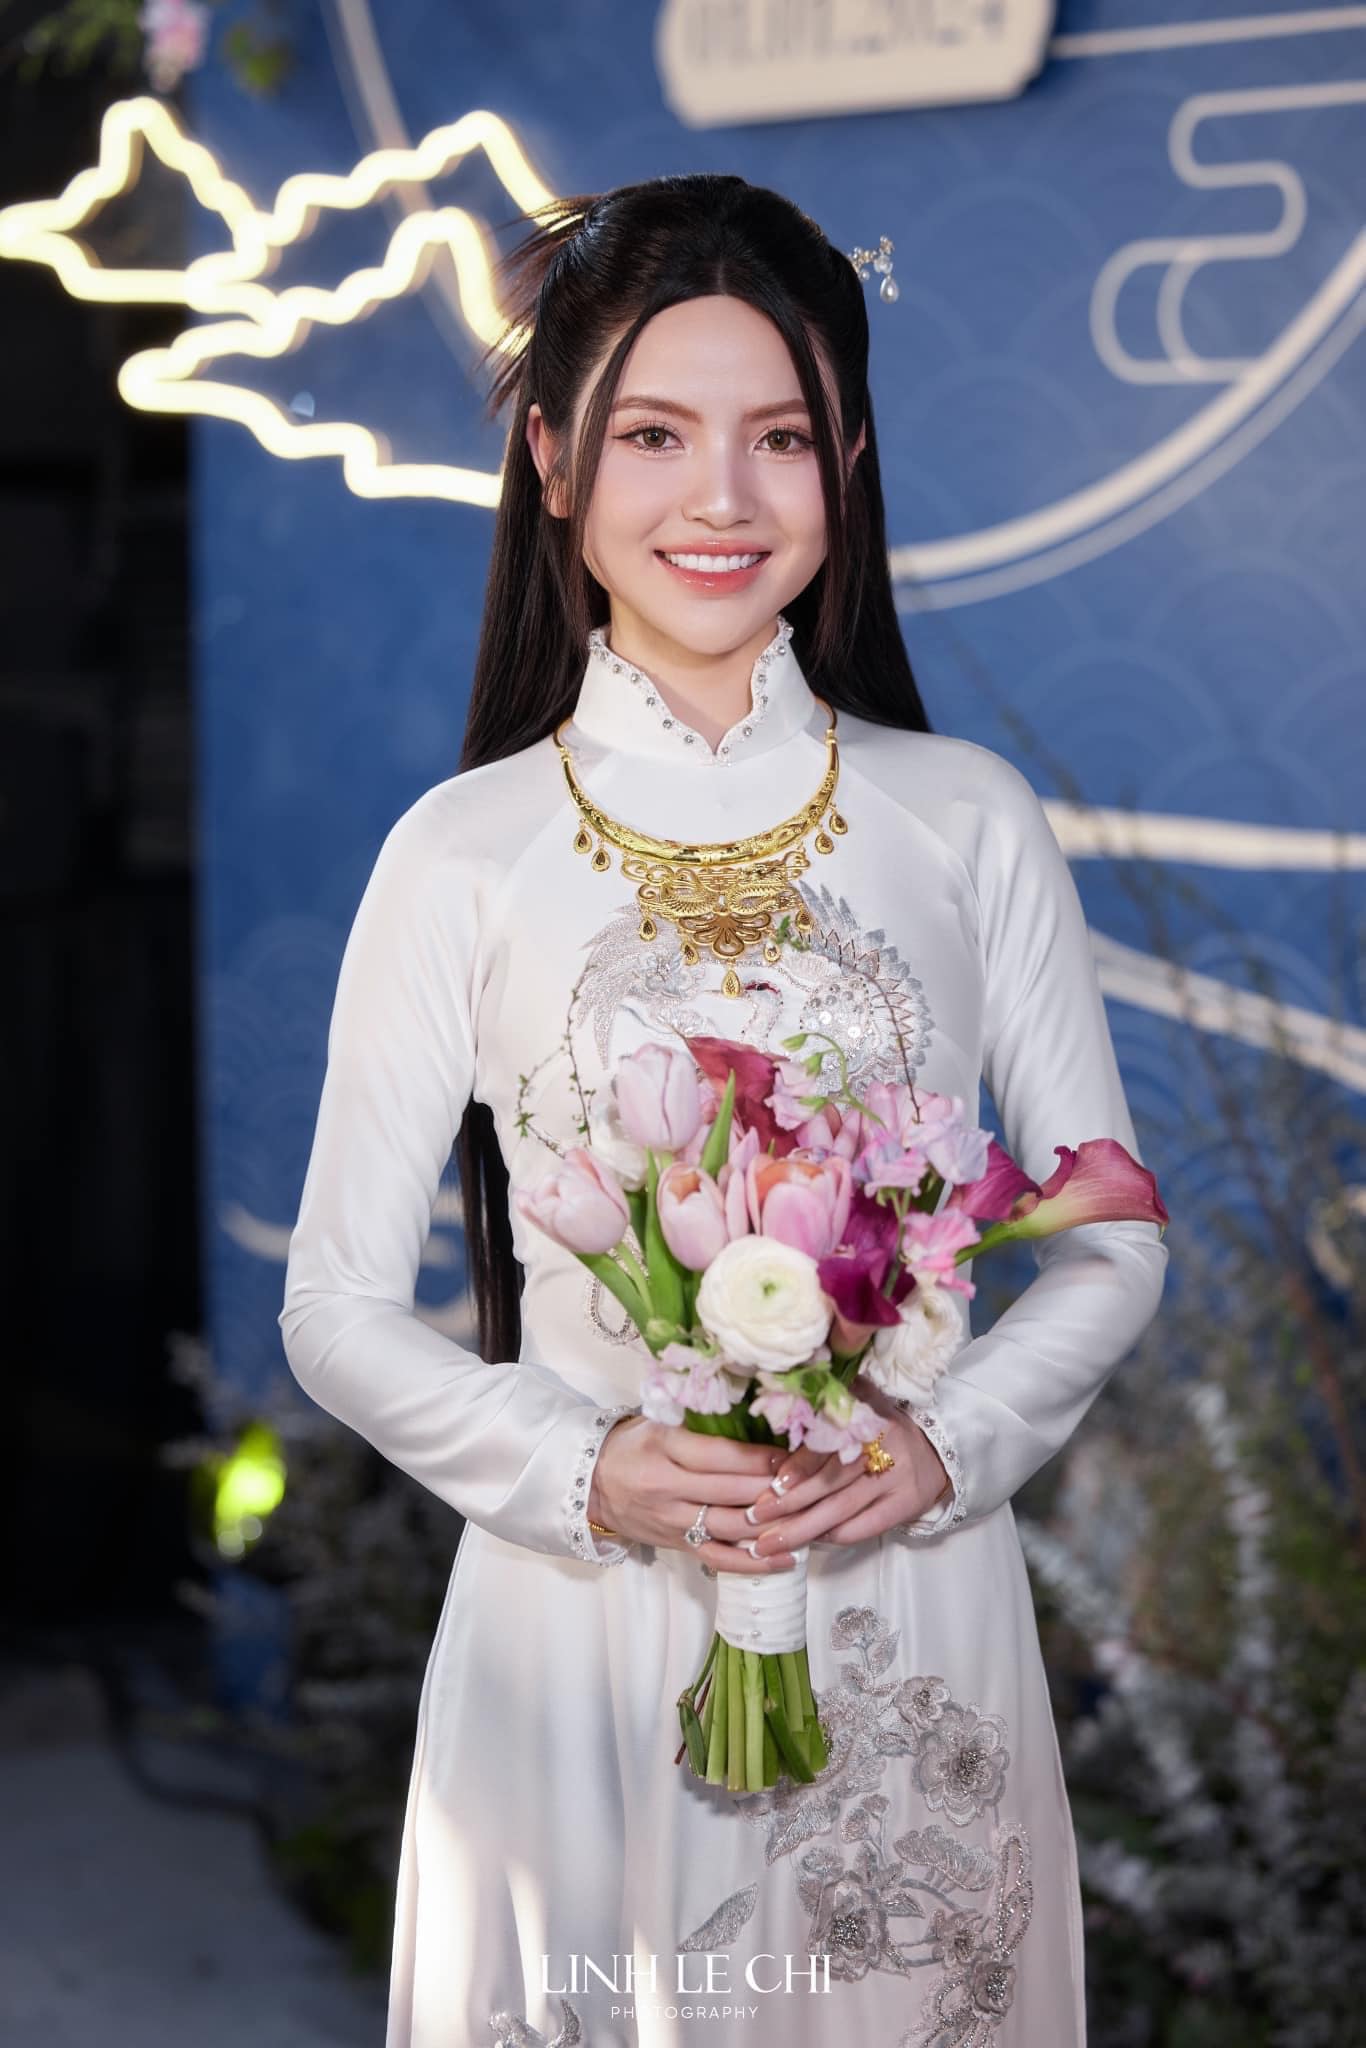 Cô dâu làng bóng đá Việt được tặng vàng ngày cưới hỏi, đoán xem của ai "nặng" nhất? - Ảnh 1.